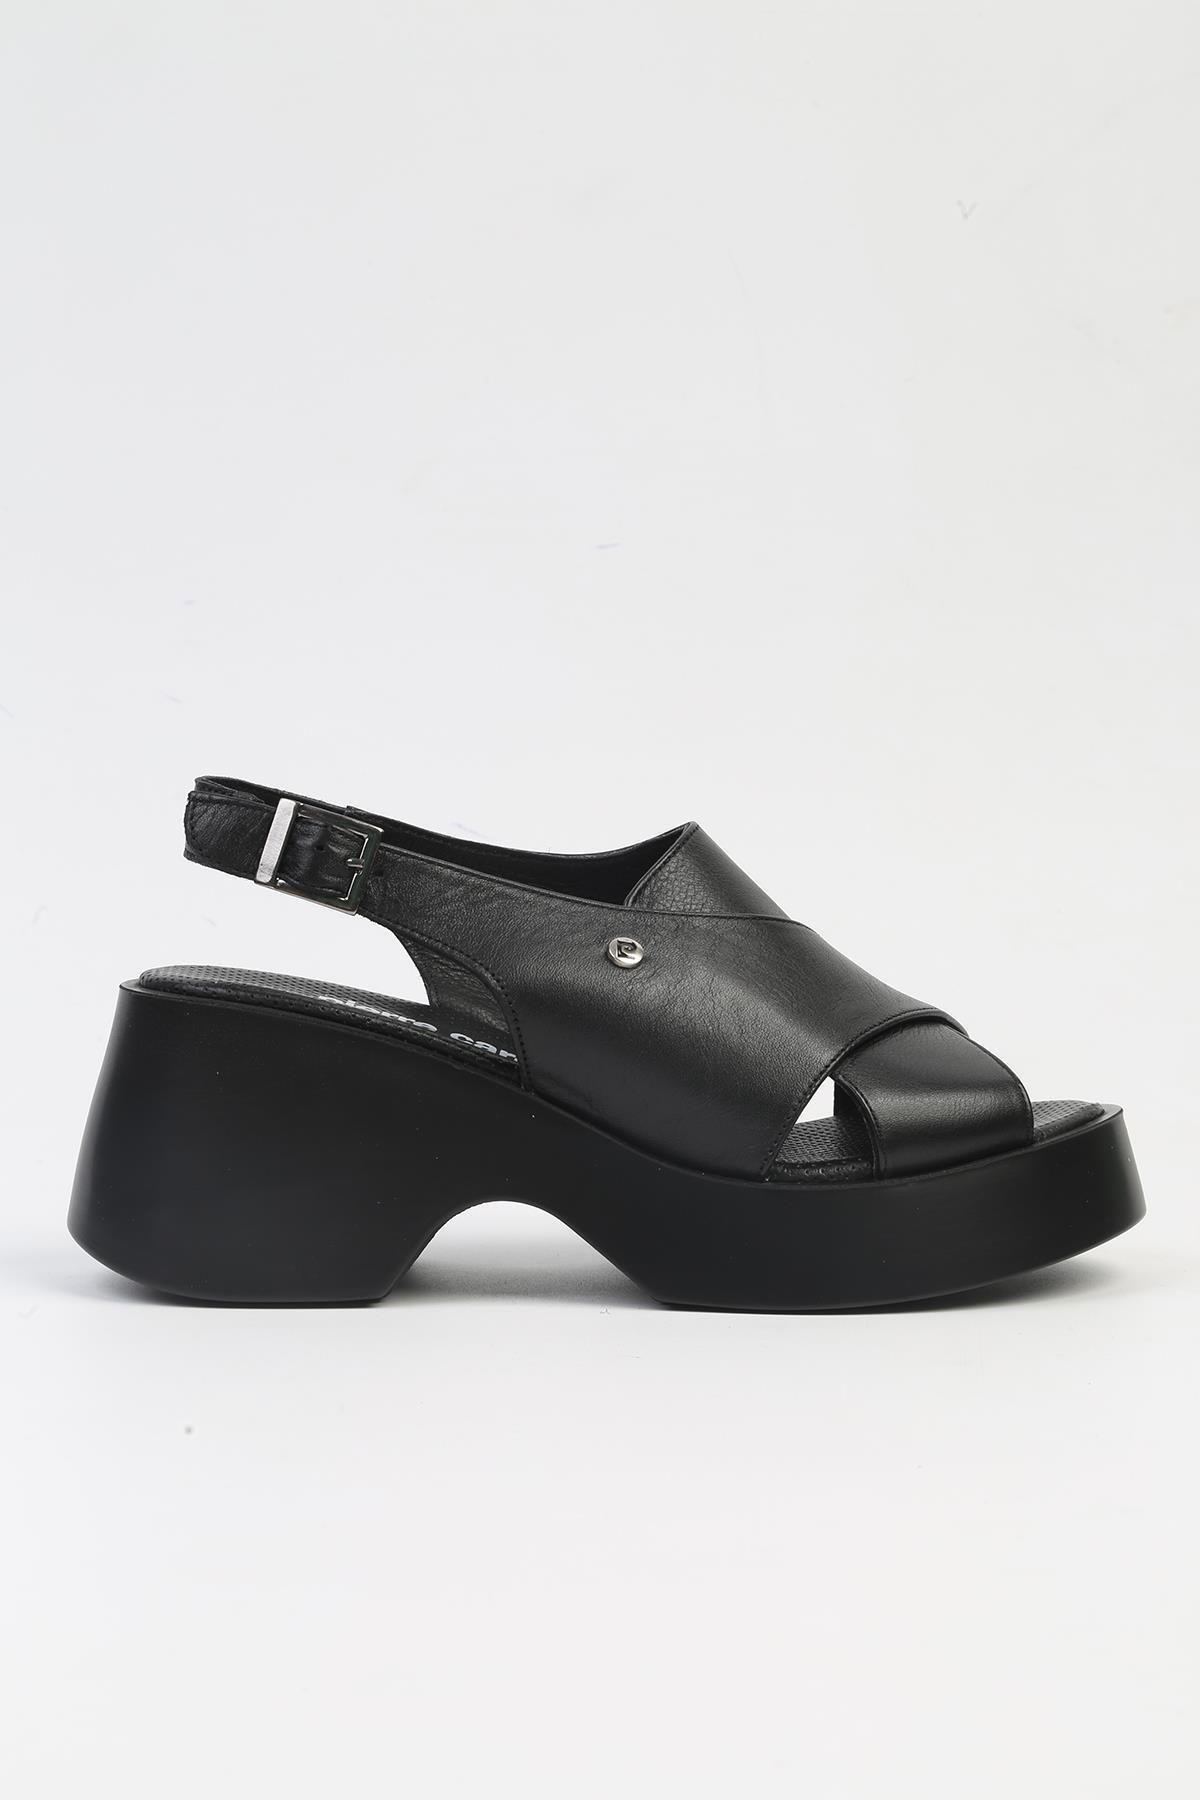 Pierre Cardin ® | PC-7201- 3968 Siyah-Kadın Topuklu Ayakkabı